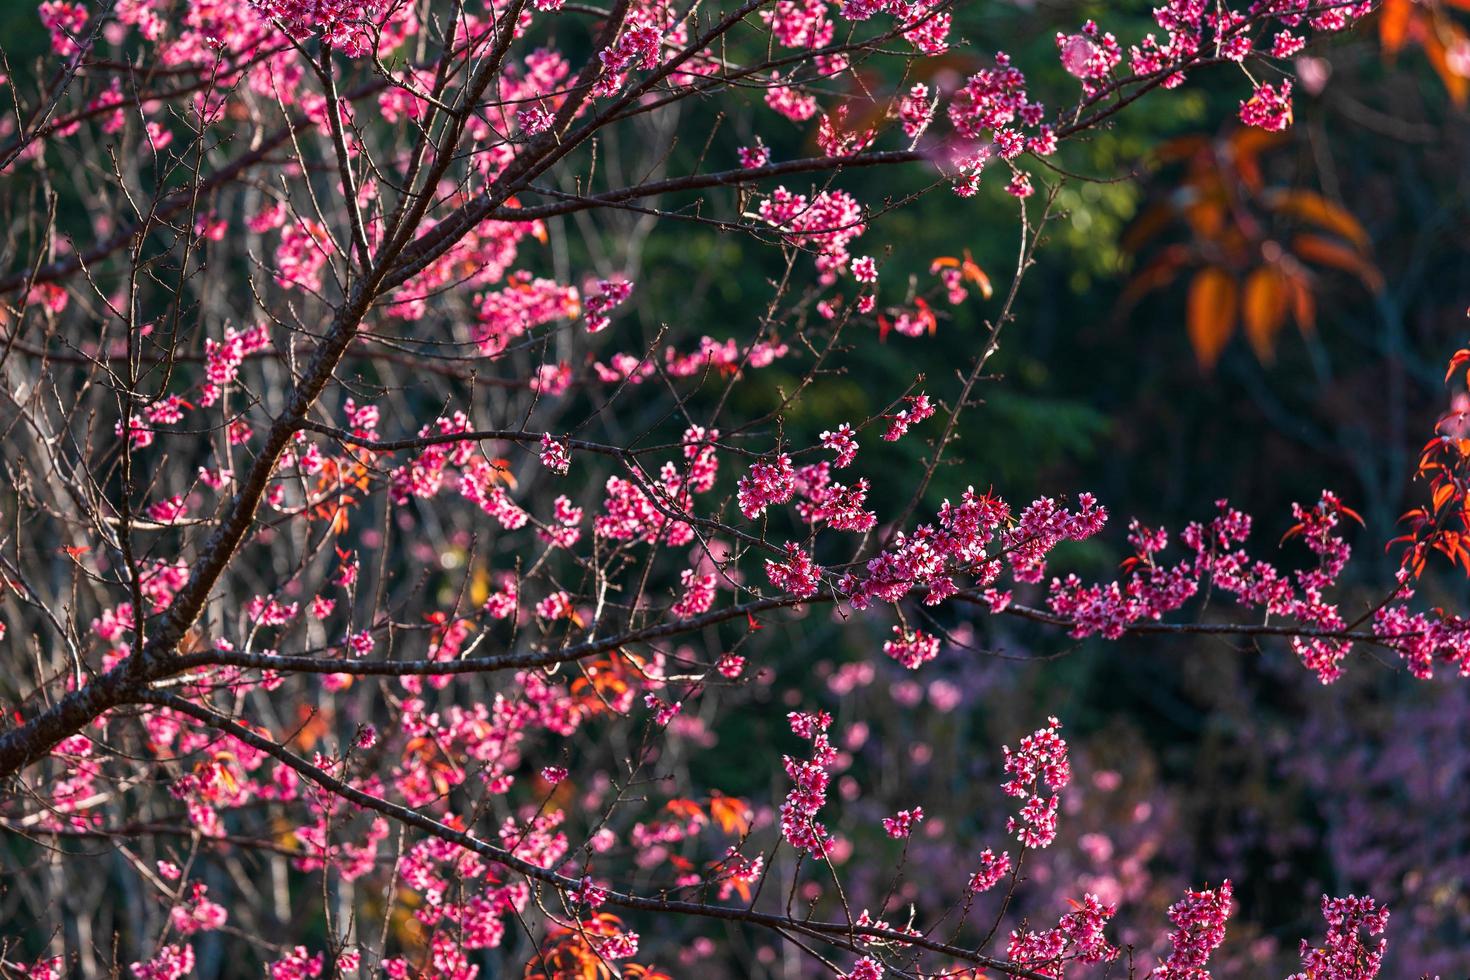 fiore di ciliegio prunus cerasoides o ciliegio selvatico himalayano, fiore tigre gigante a phu lom lo, phetchaboon, thailandia. foto